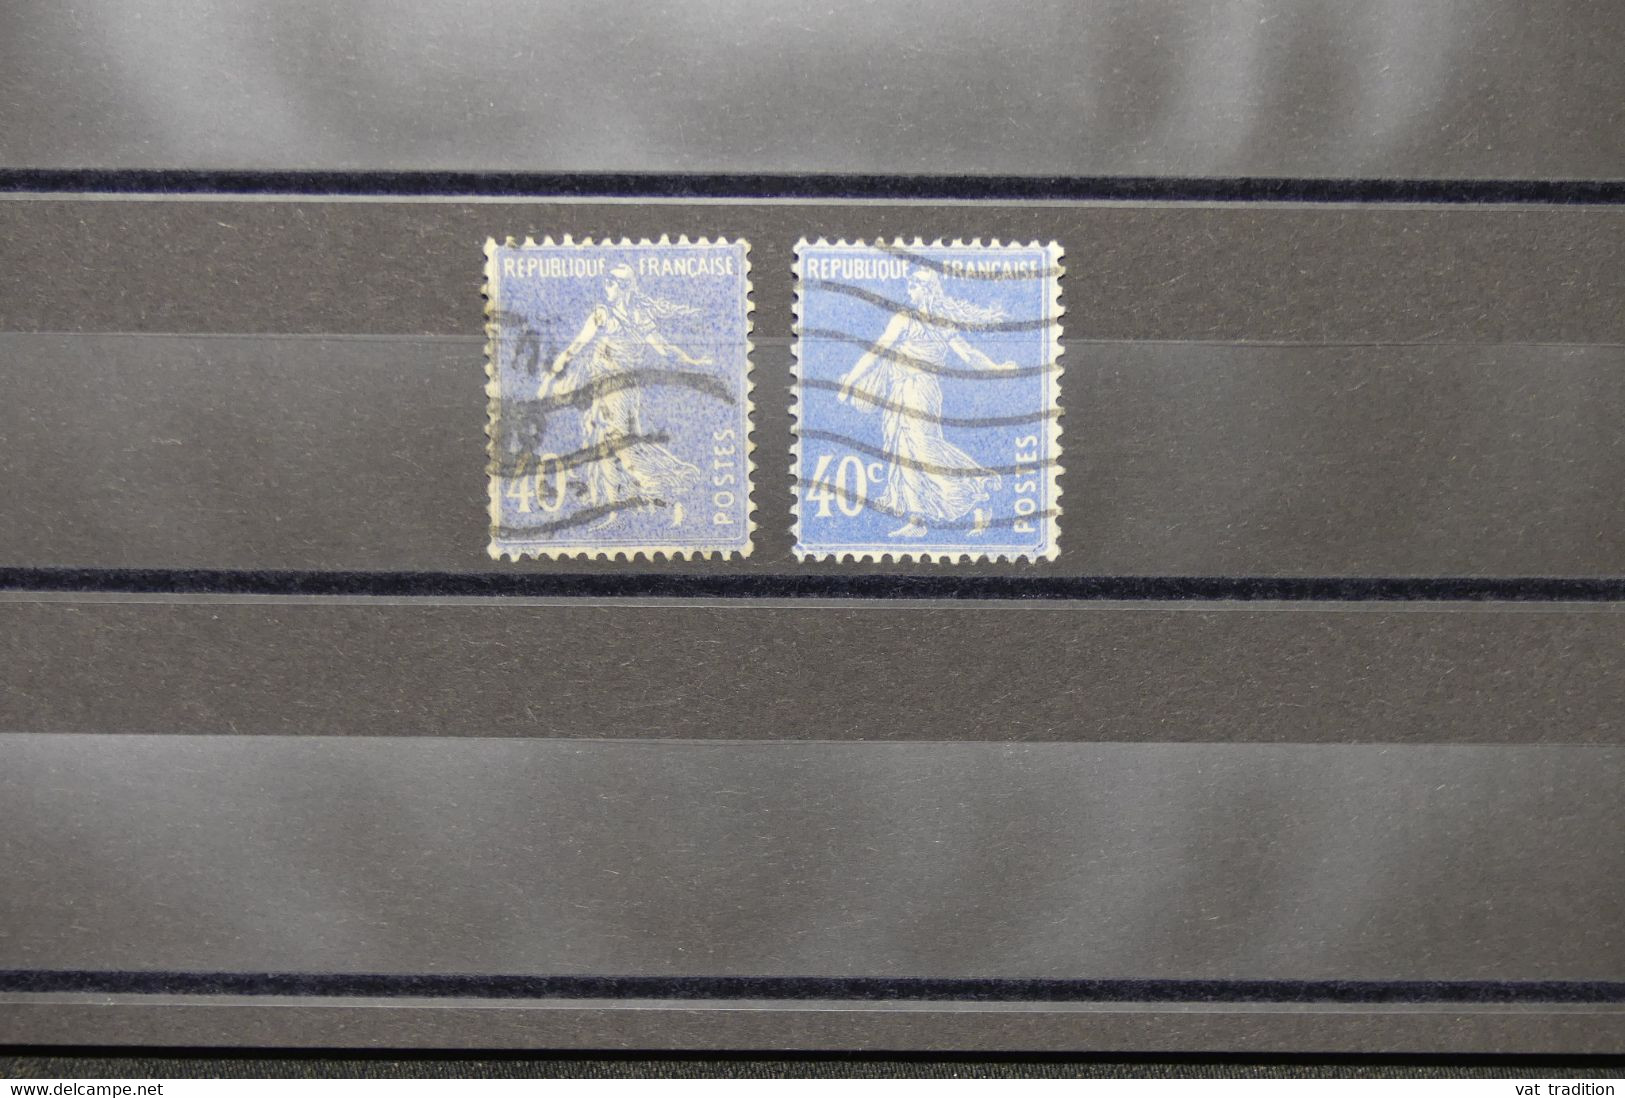 FRANCE - Variété - N° Yvert 237 - Type Semeuse - Mot Postes Maigre + 1 Gras - Oblitéré - L 73990 - Gebraucht